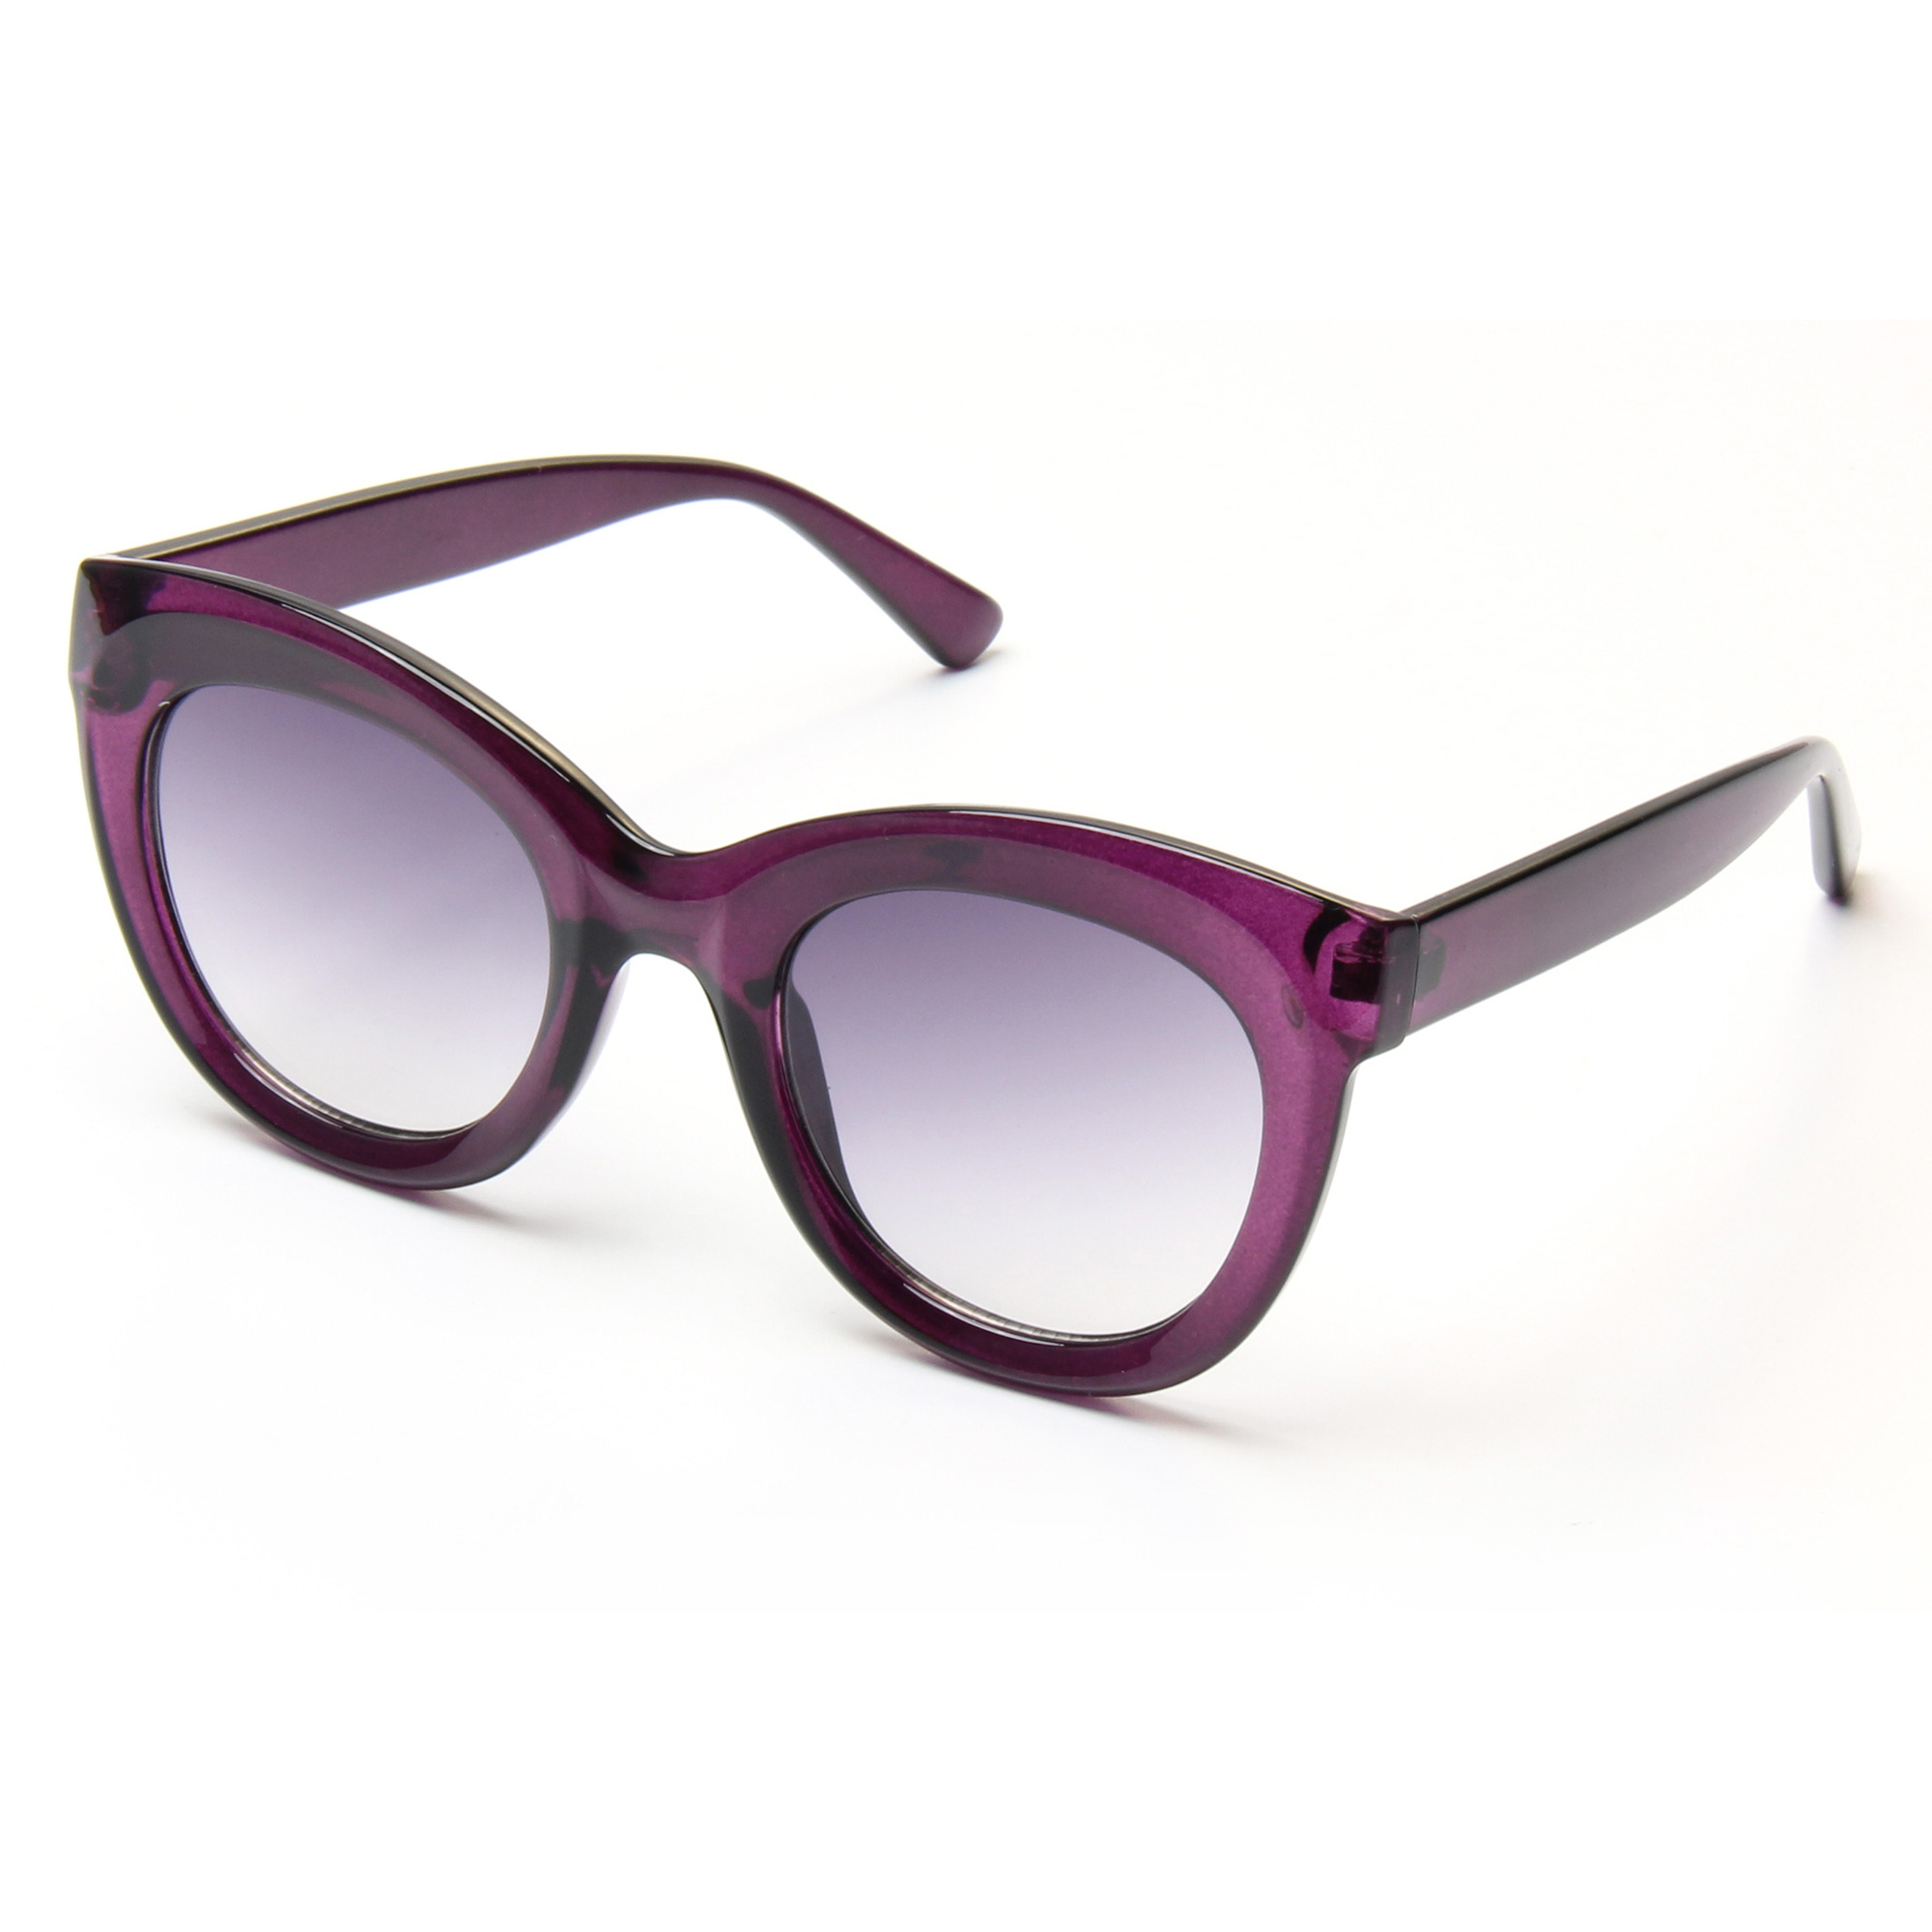 Eugenia bulk womens sunglasses classic for Decoration-1